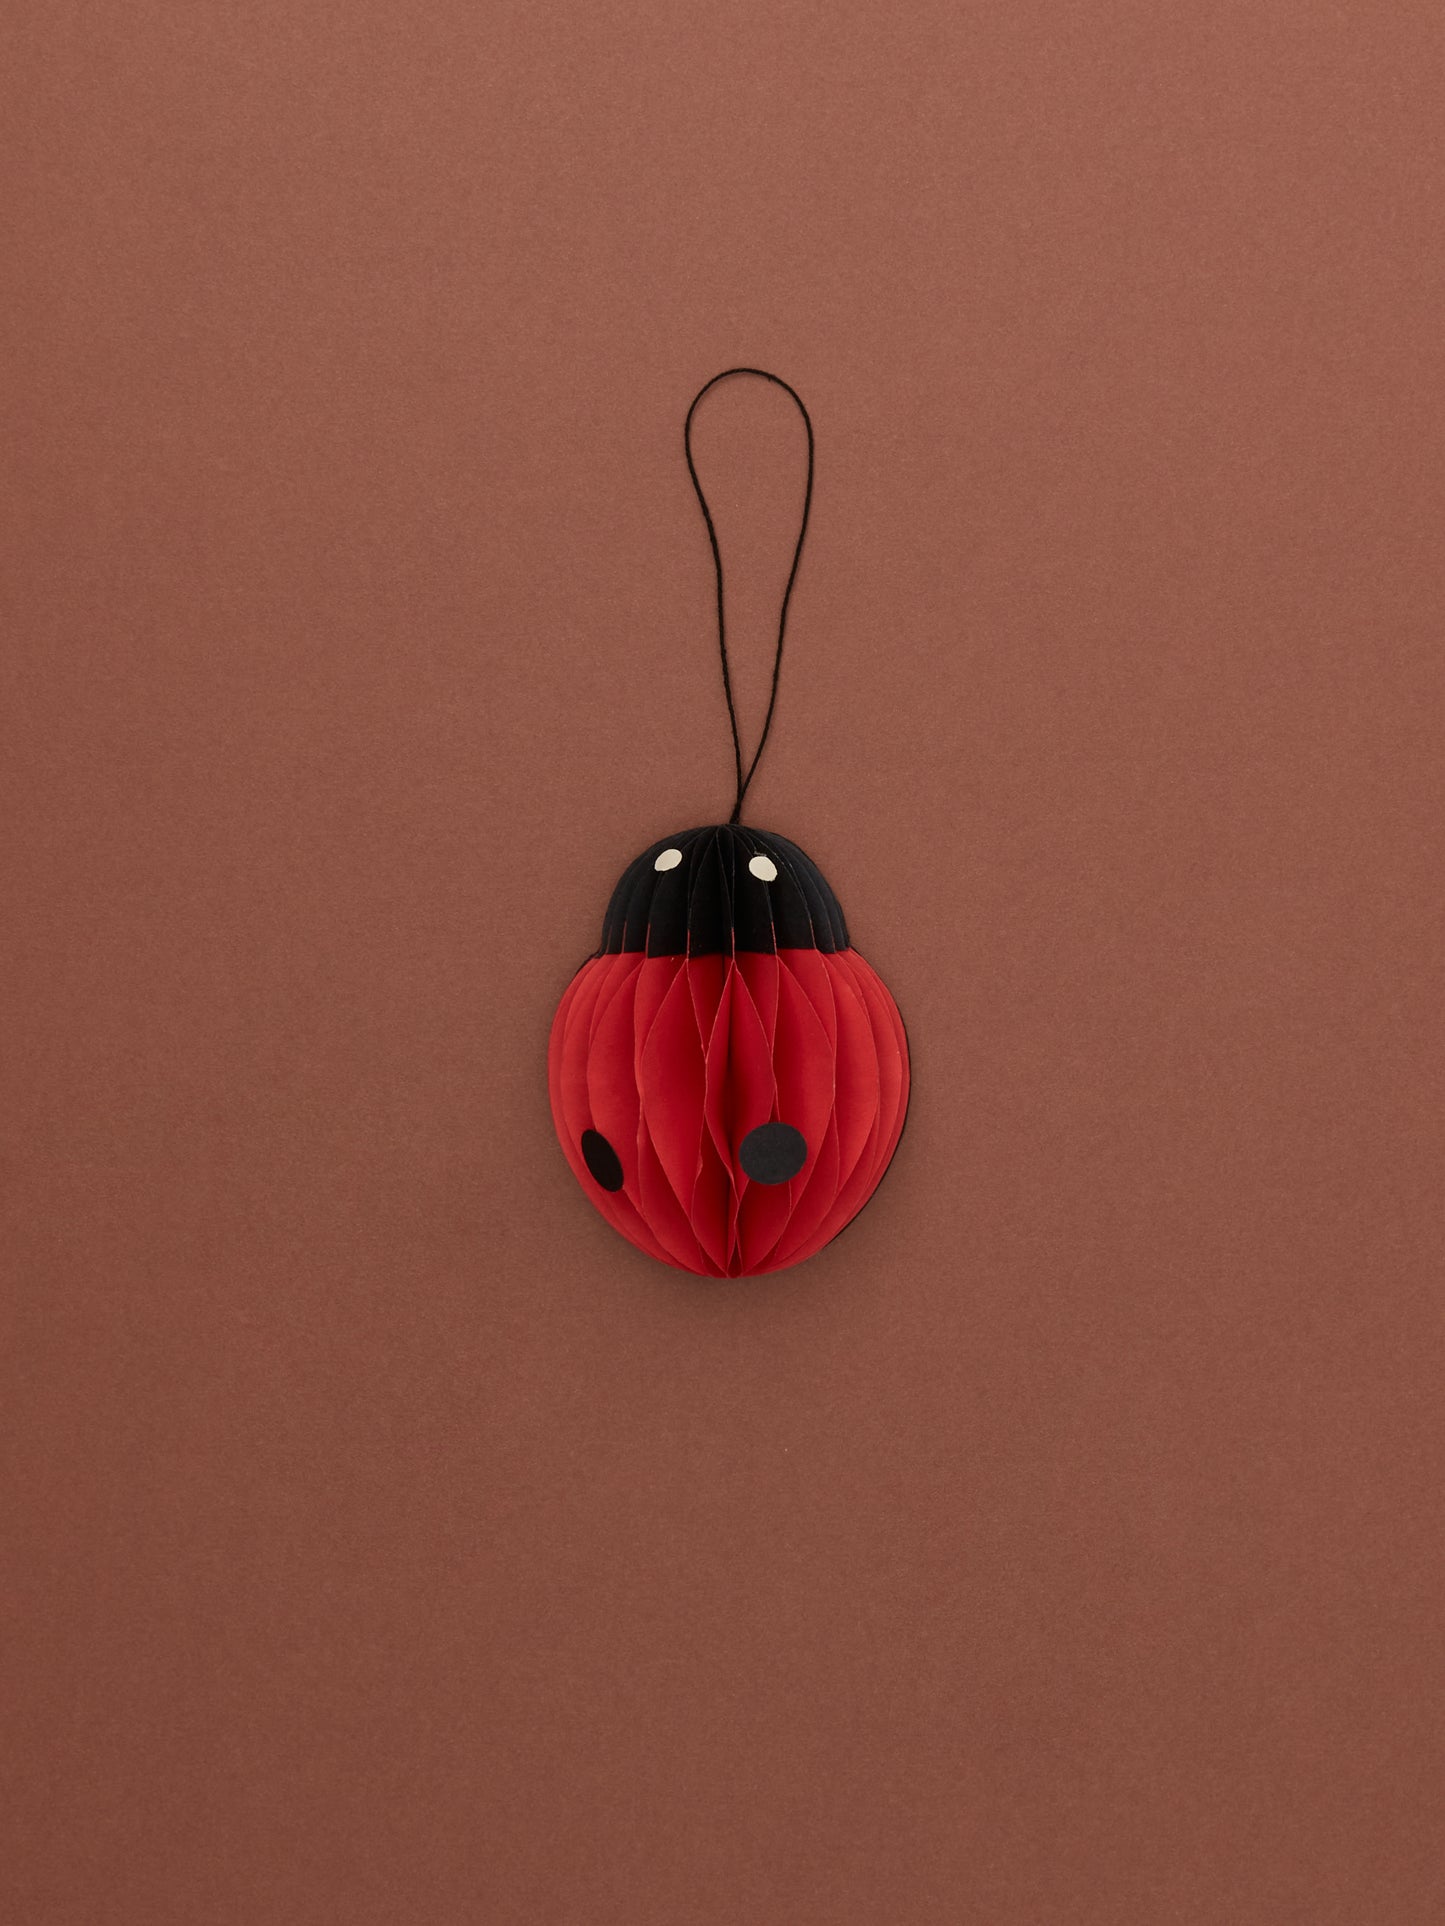 Ladybird Paper Ornament by Grzegorz